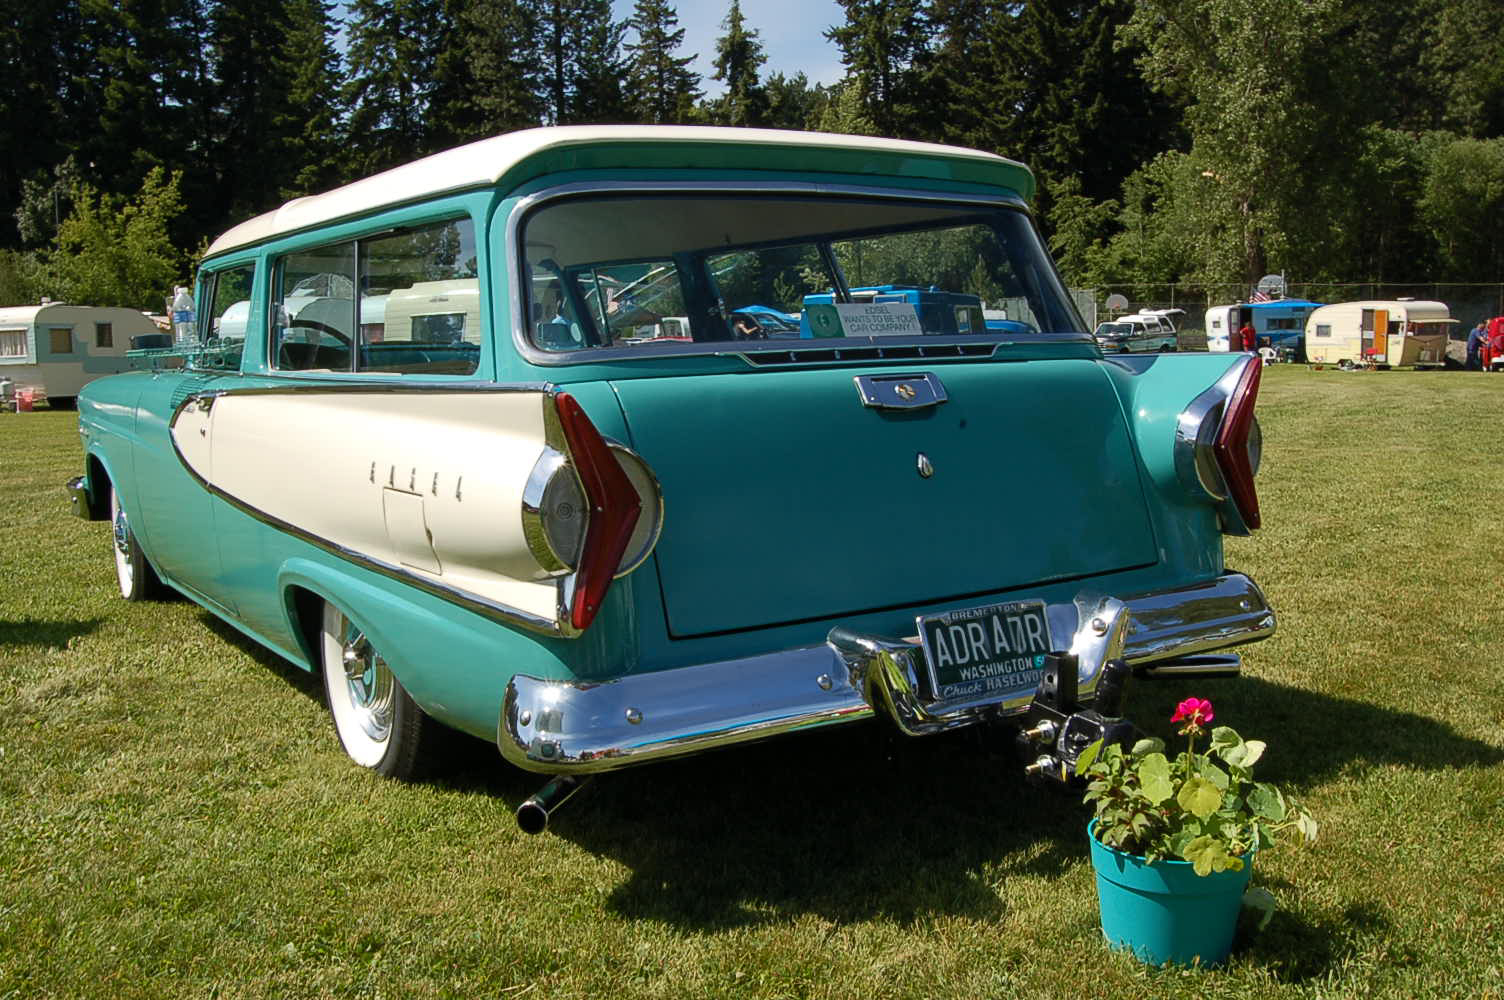 1958 Ford edsel station wagon #2